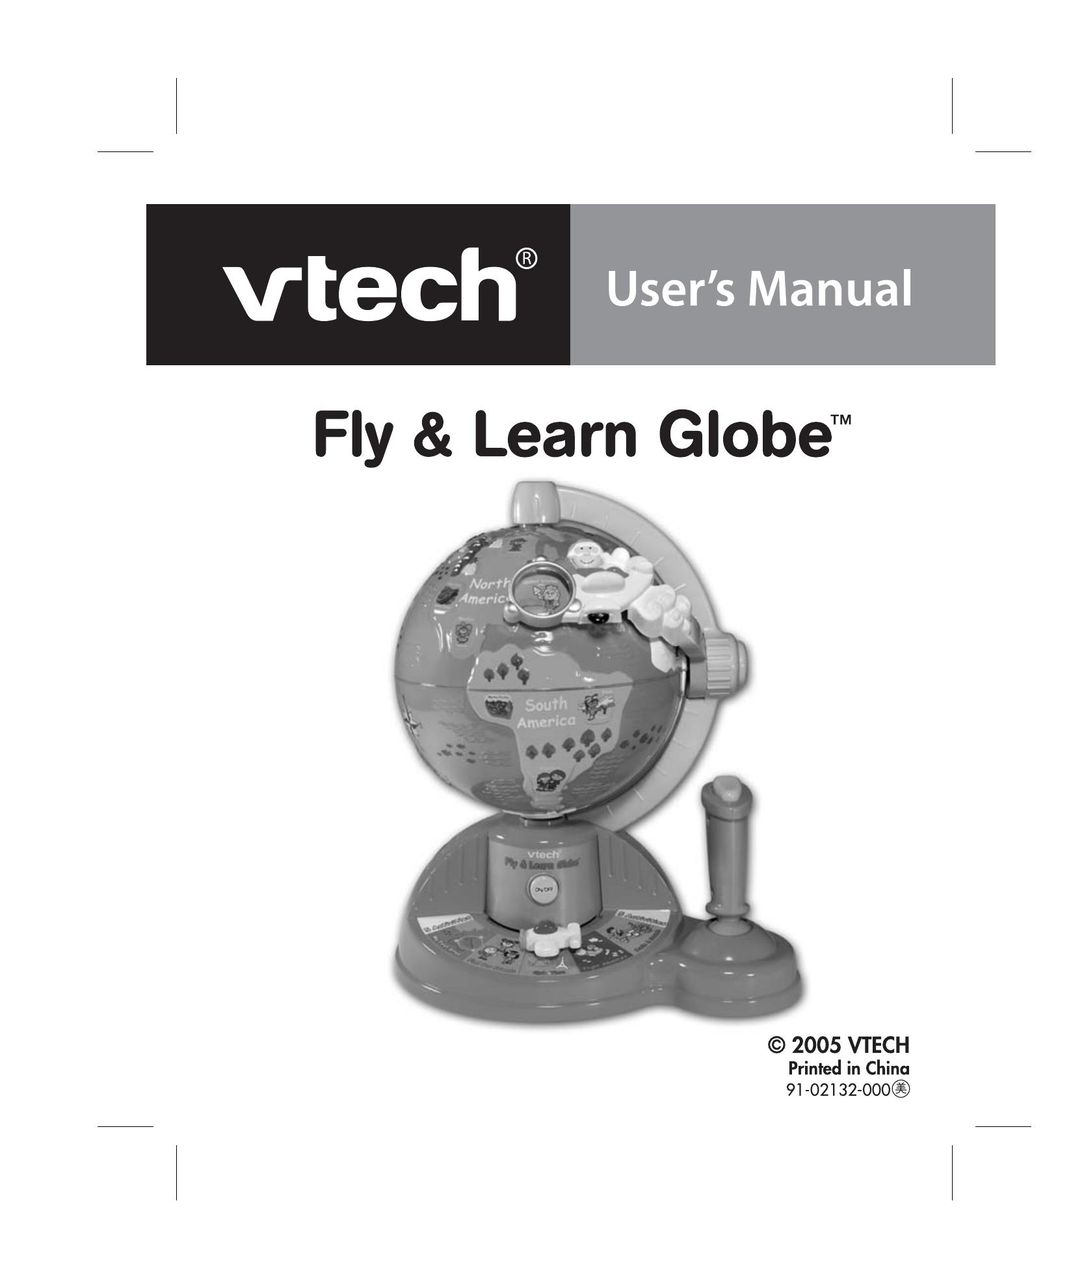 VTech Fly & Learn Globe Games User Manual